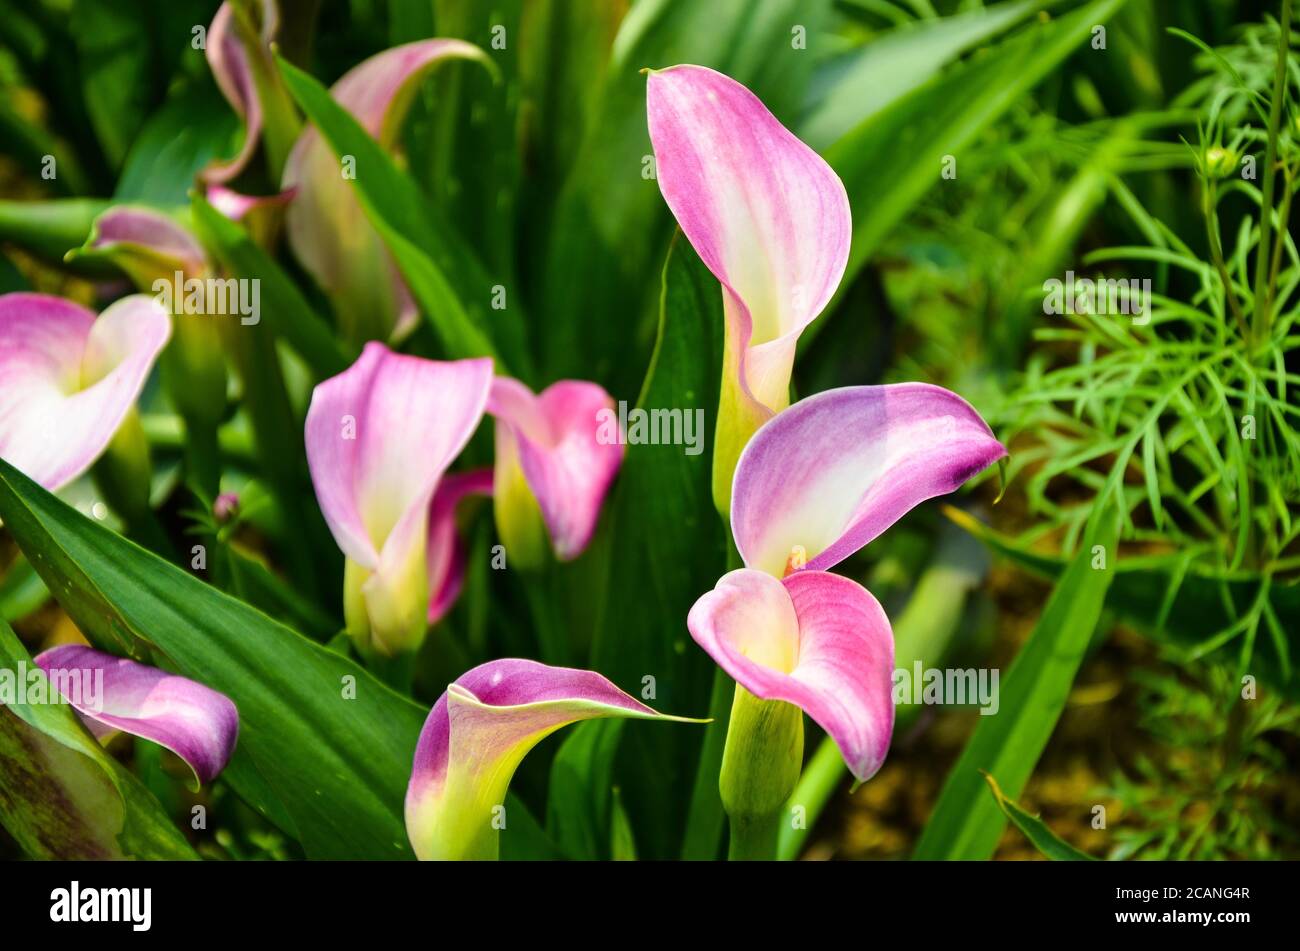 Pink Zantedeschia aethiopica or Calla Lily in the garden Stock Photo ...